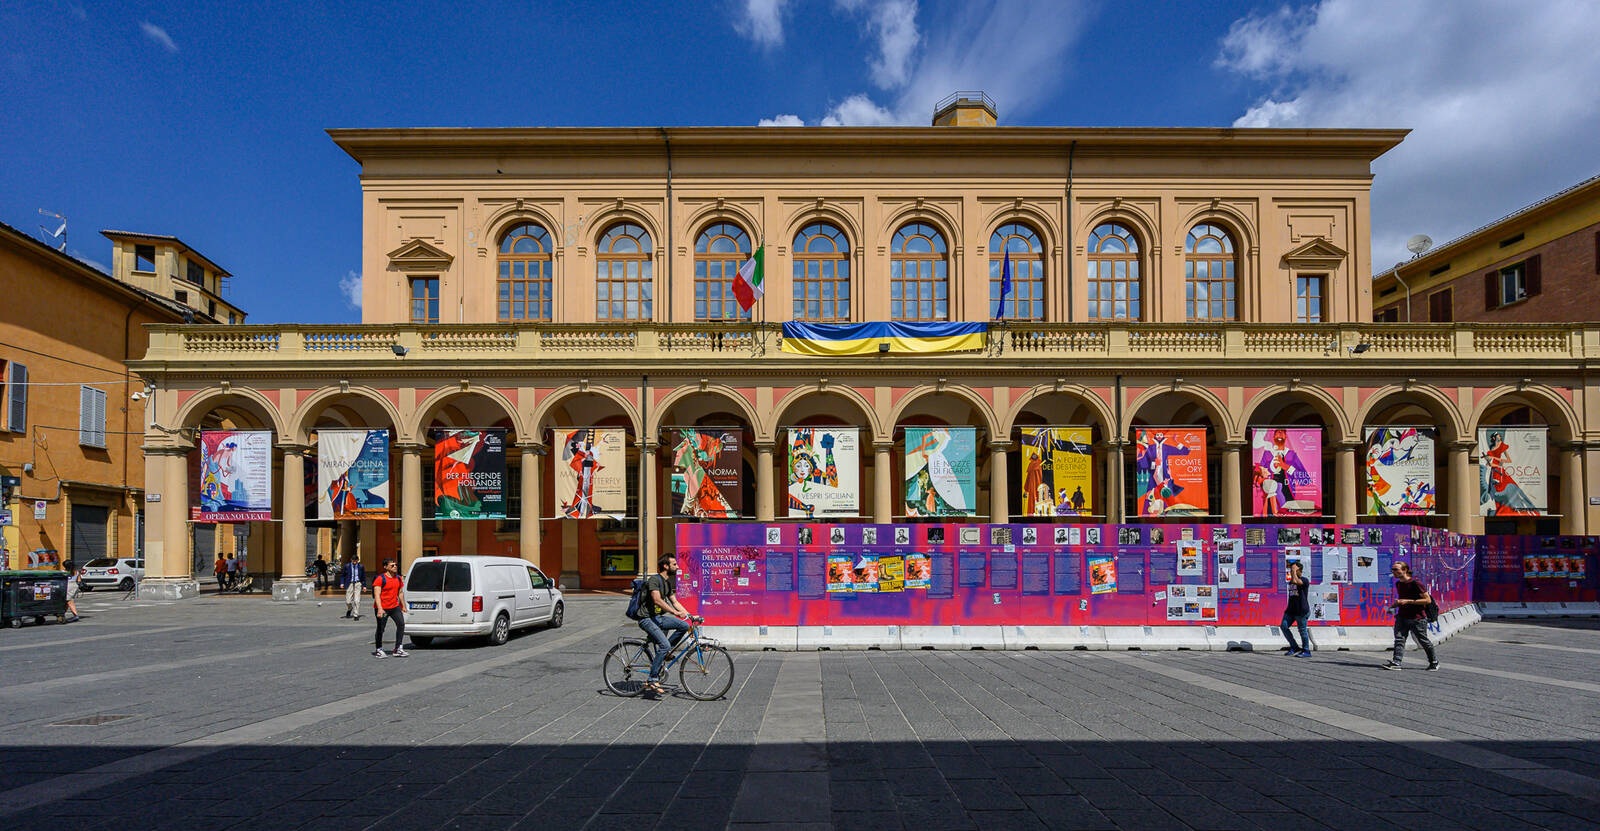 Image of Teatro Comunale di Bologna by Sue Wolfe